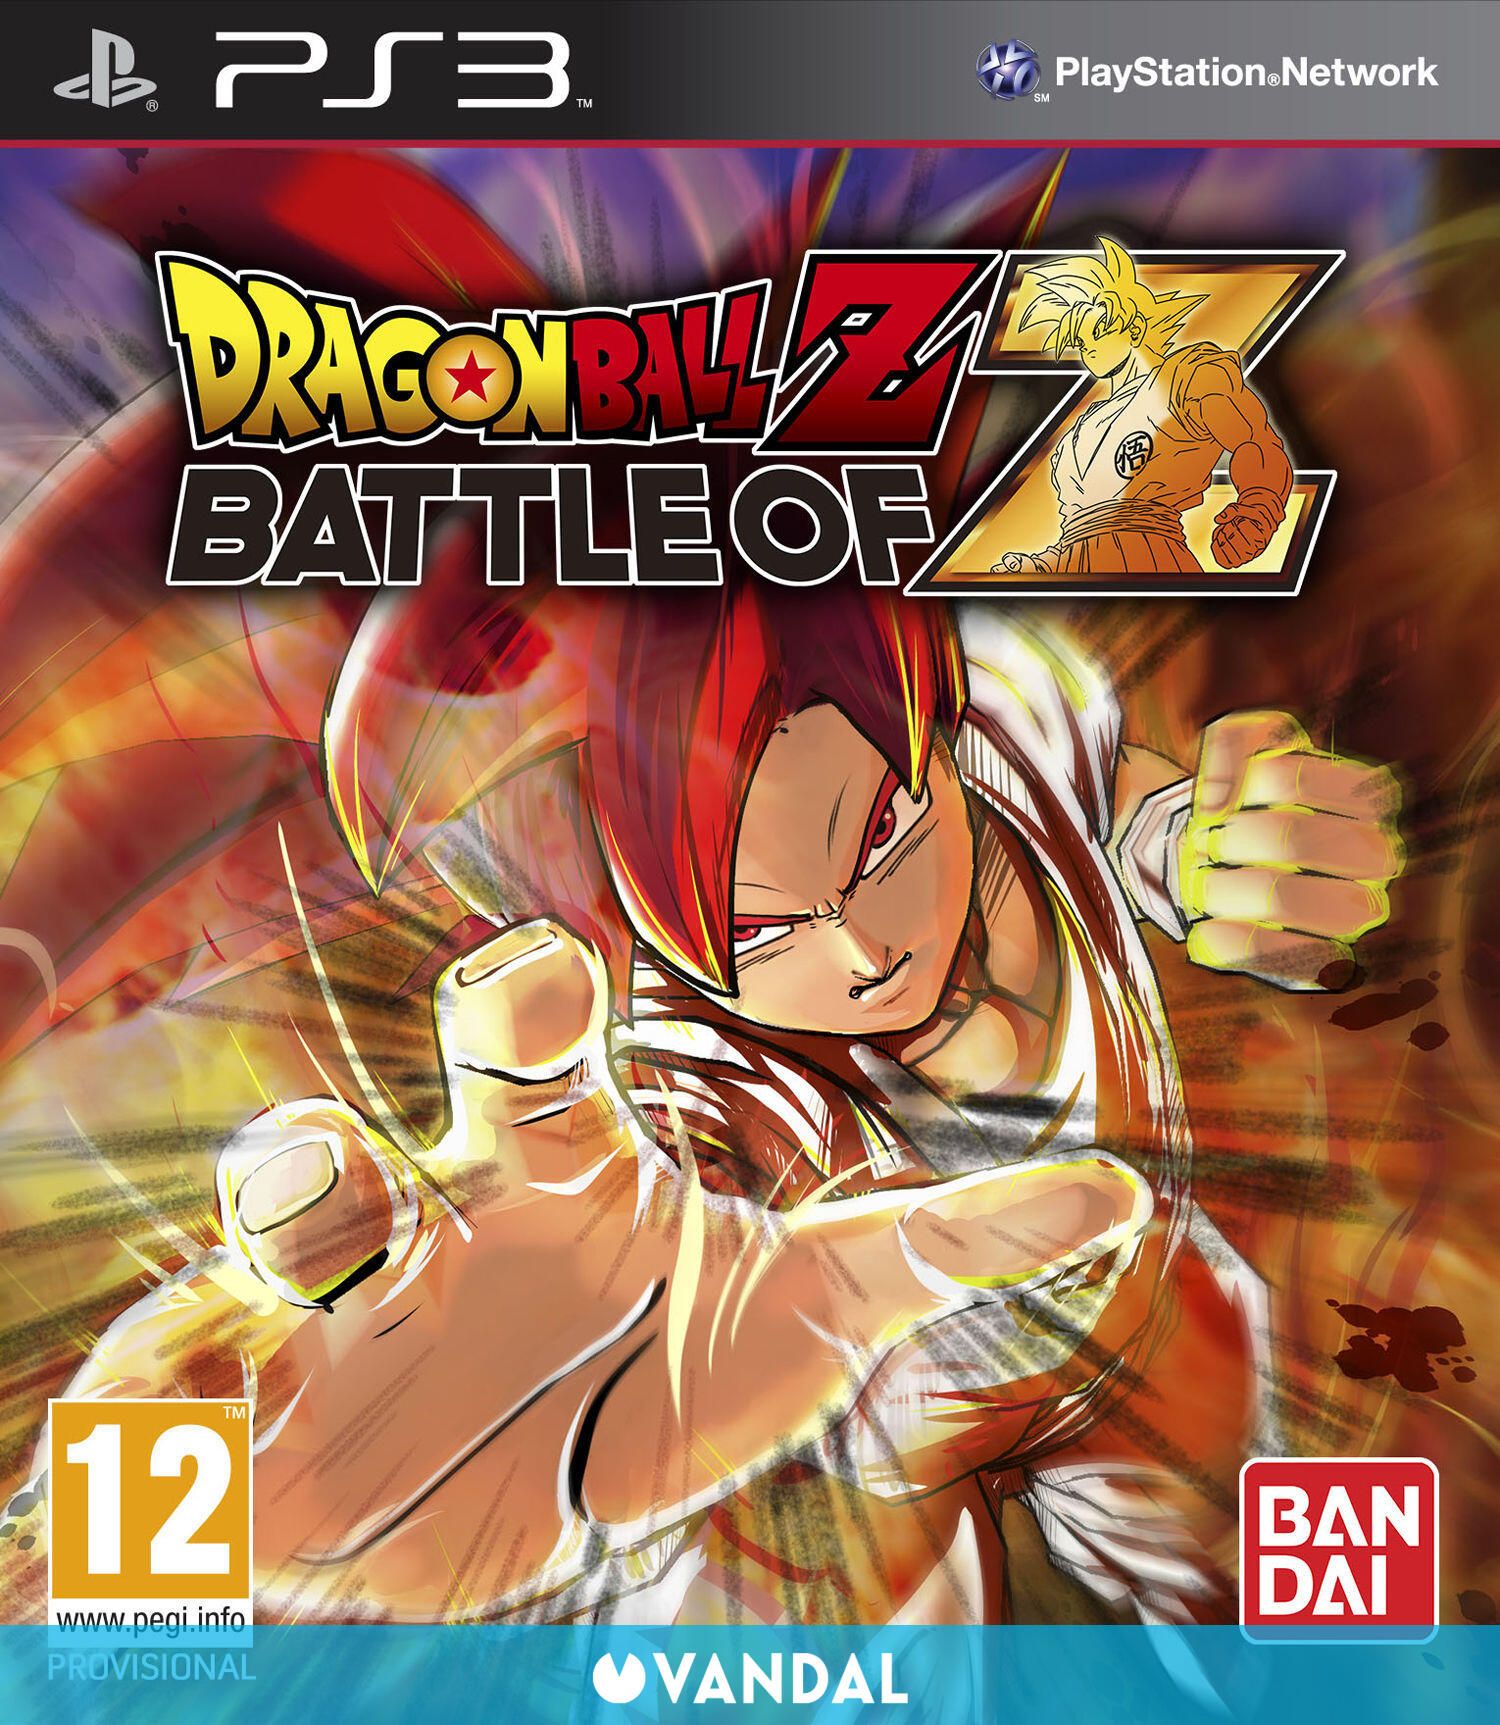 Dragon Ball Z: Battle of Z no tendrá multijugador local en PS3 y Xbox 360 -  Vandal